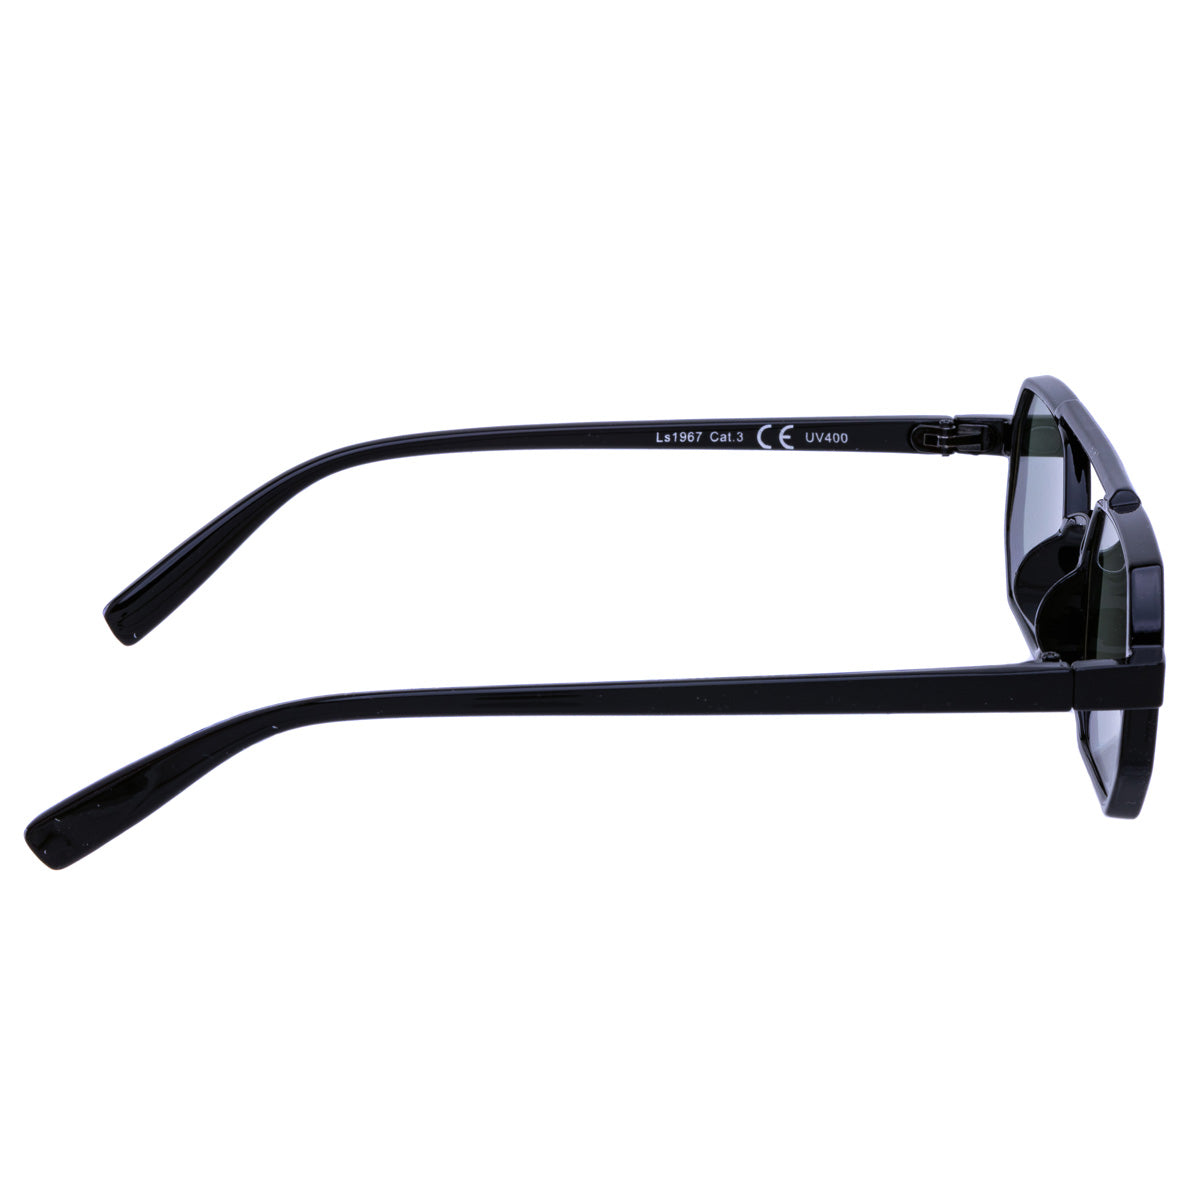 Vinklade rektangulära solglasögon med spegelglas